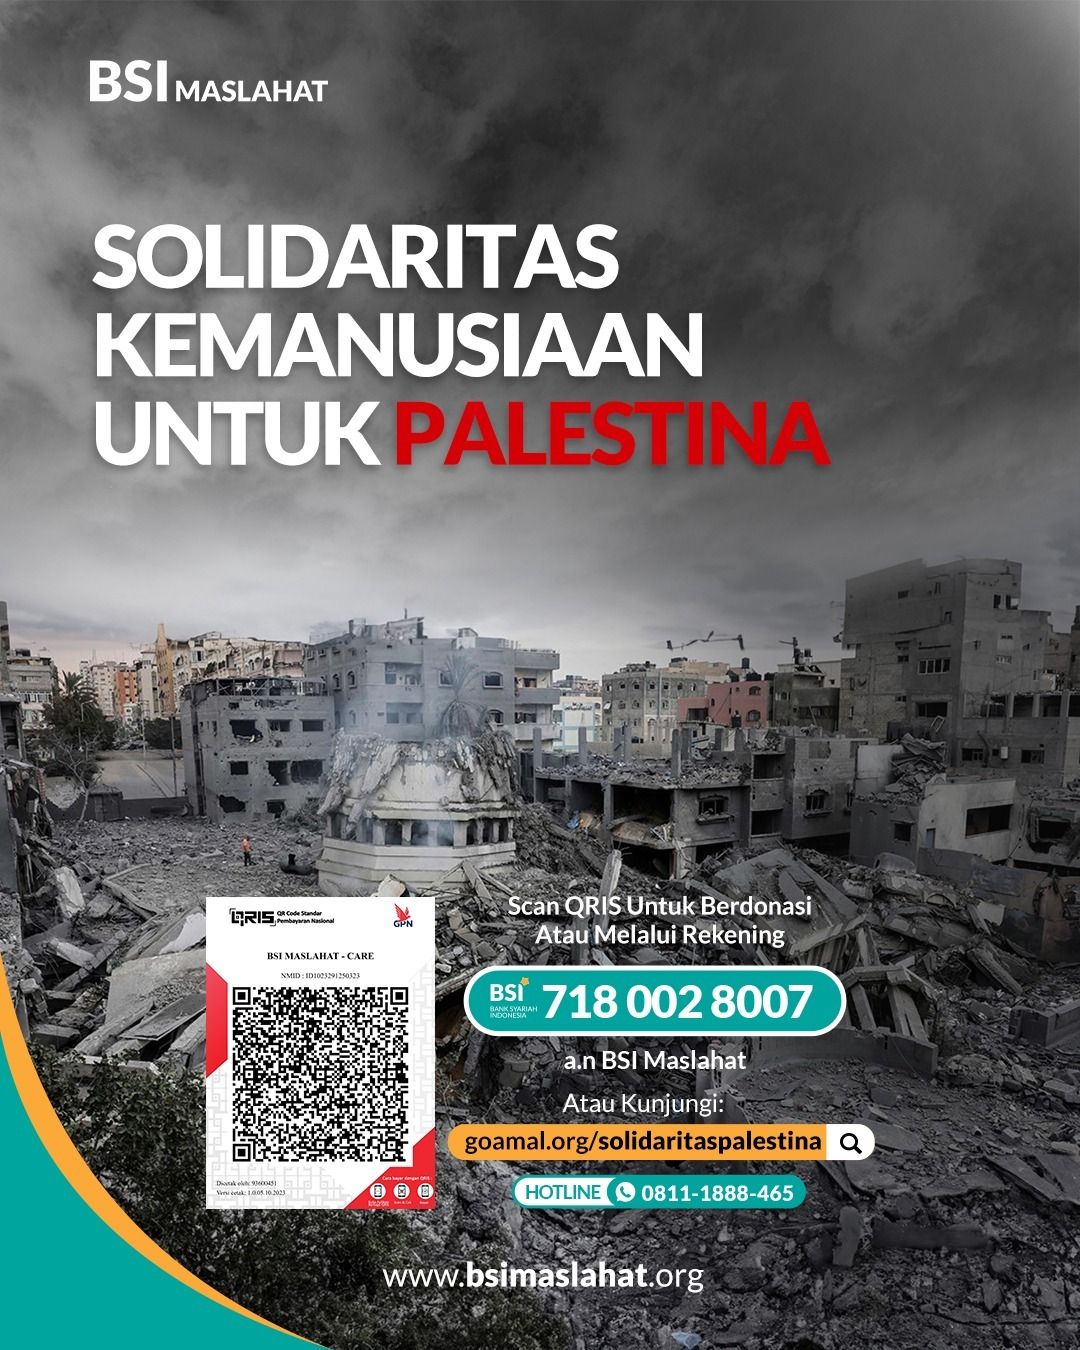 BSI Maslahat Galang Dana untuk Solidaritas Kemanusiaan Palestina    